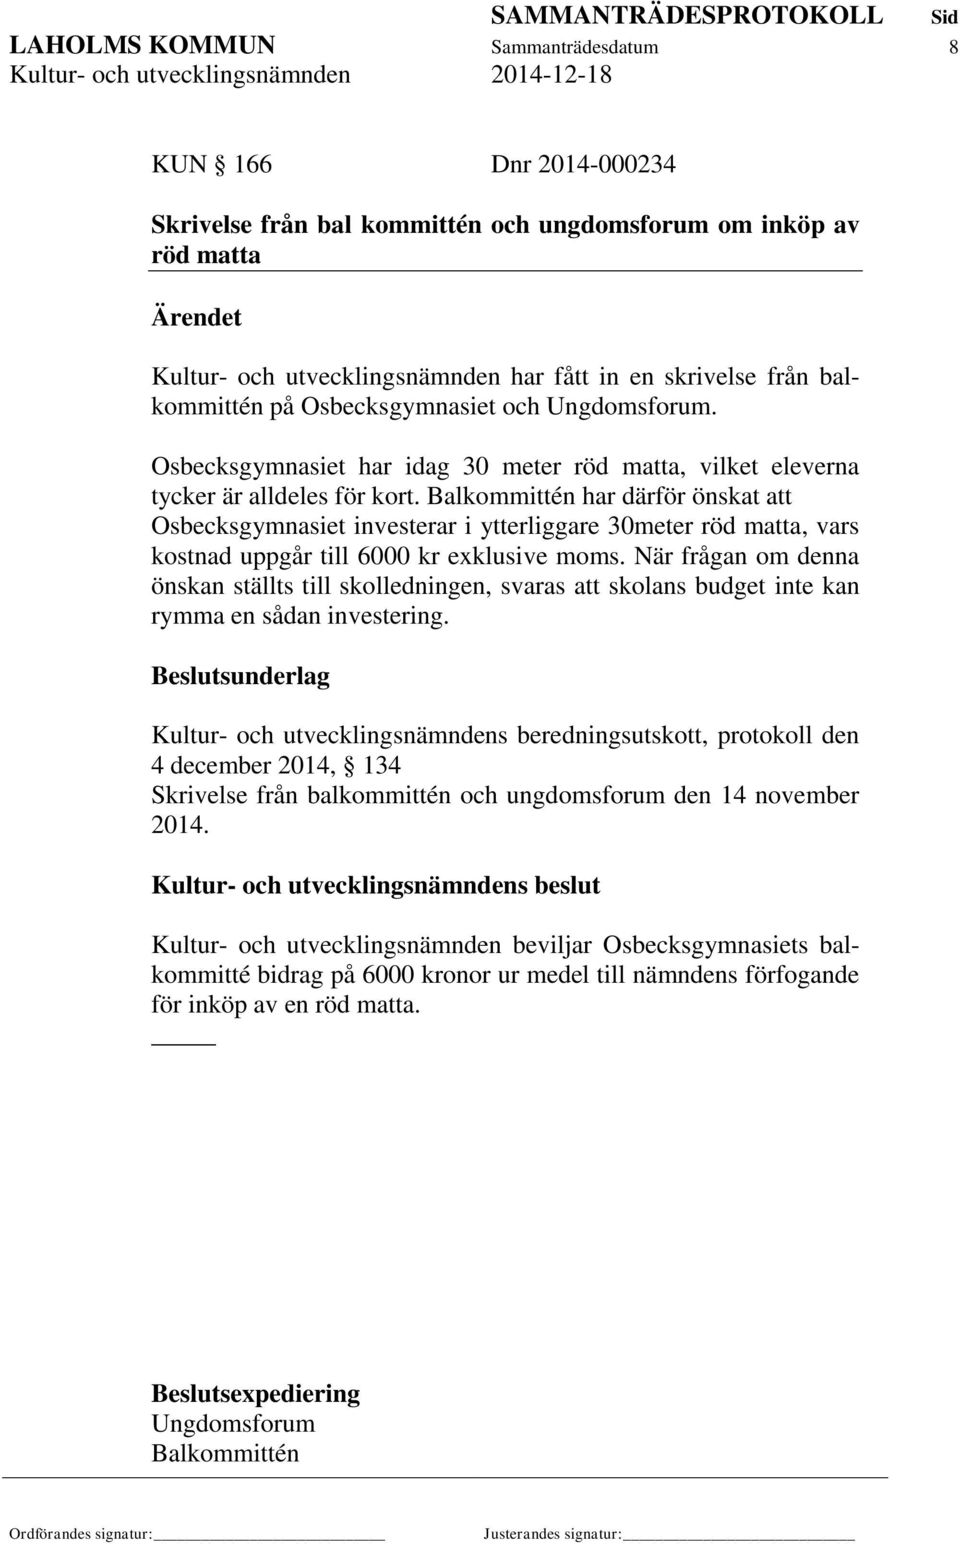 Balkommittén har därför önskat att Osbecksgymnasiet investerar i ytterliggare 30meter röd matta, vars kostnad uppgår till 6000 kr exklusive moms.